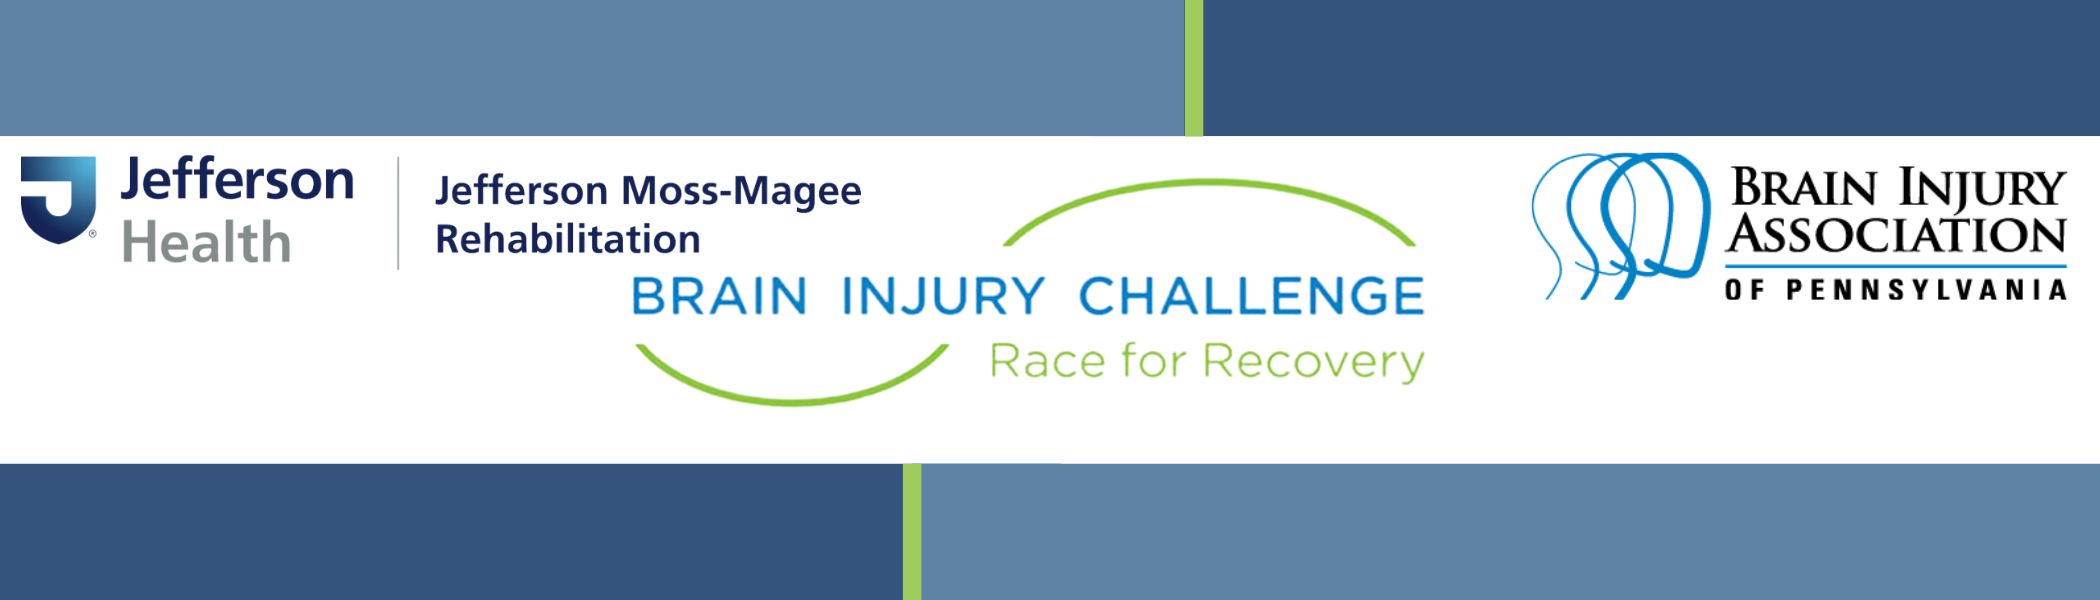 Brain Injury Challenge web banner